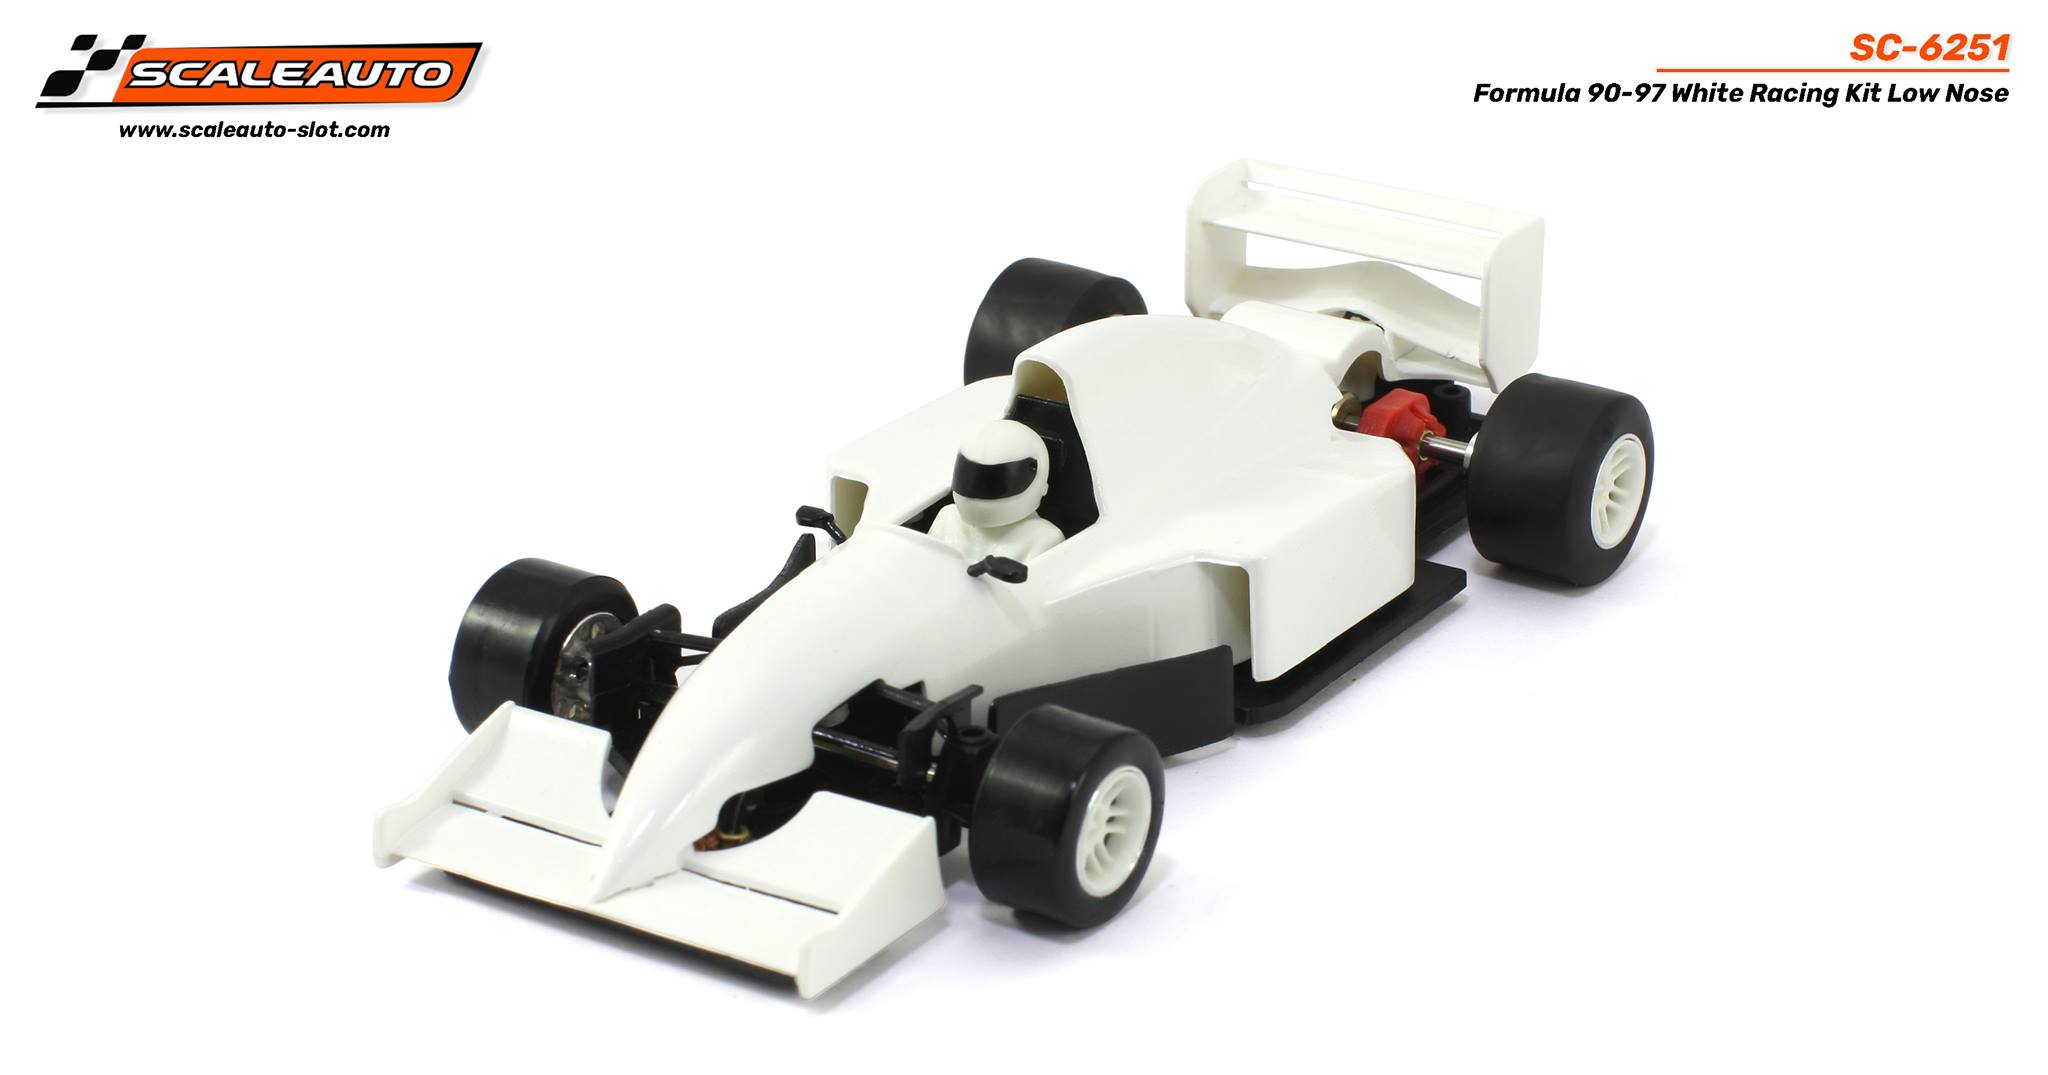 SC-6251 Formula 90-97 Low Nose White Kit Car